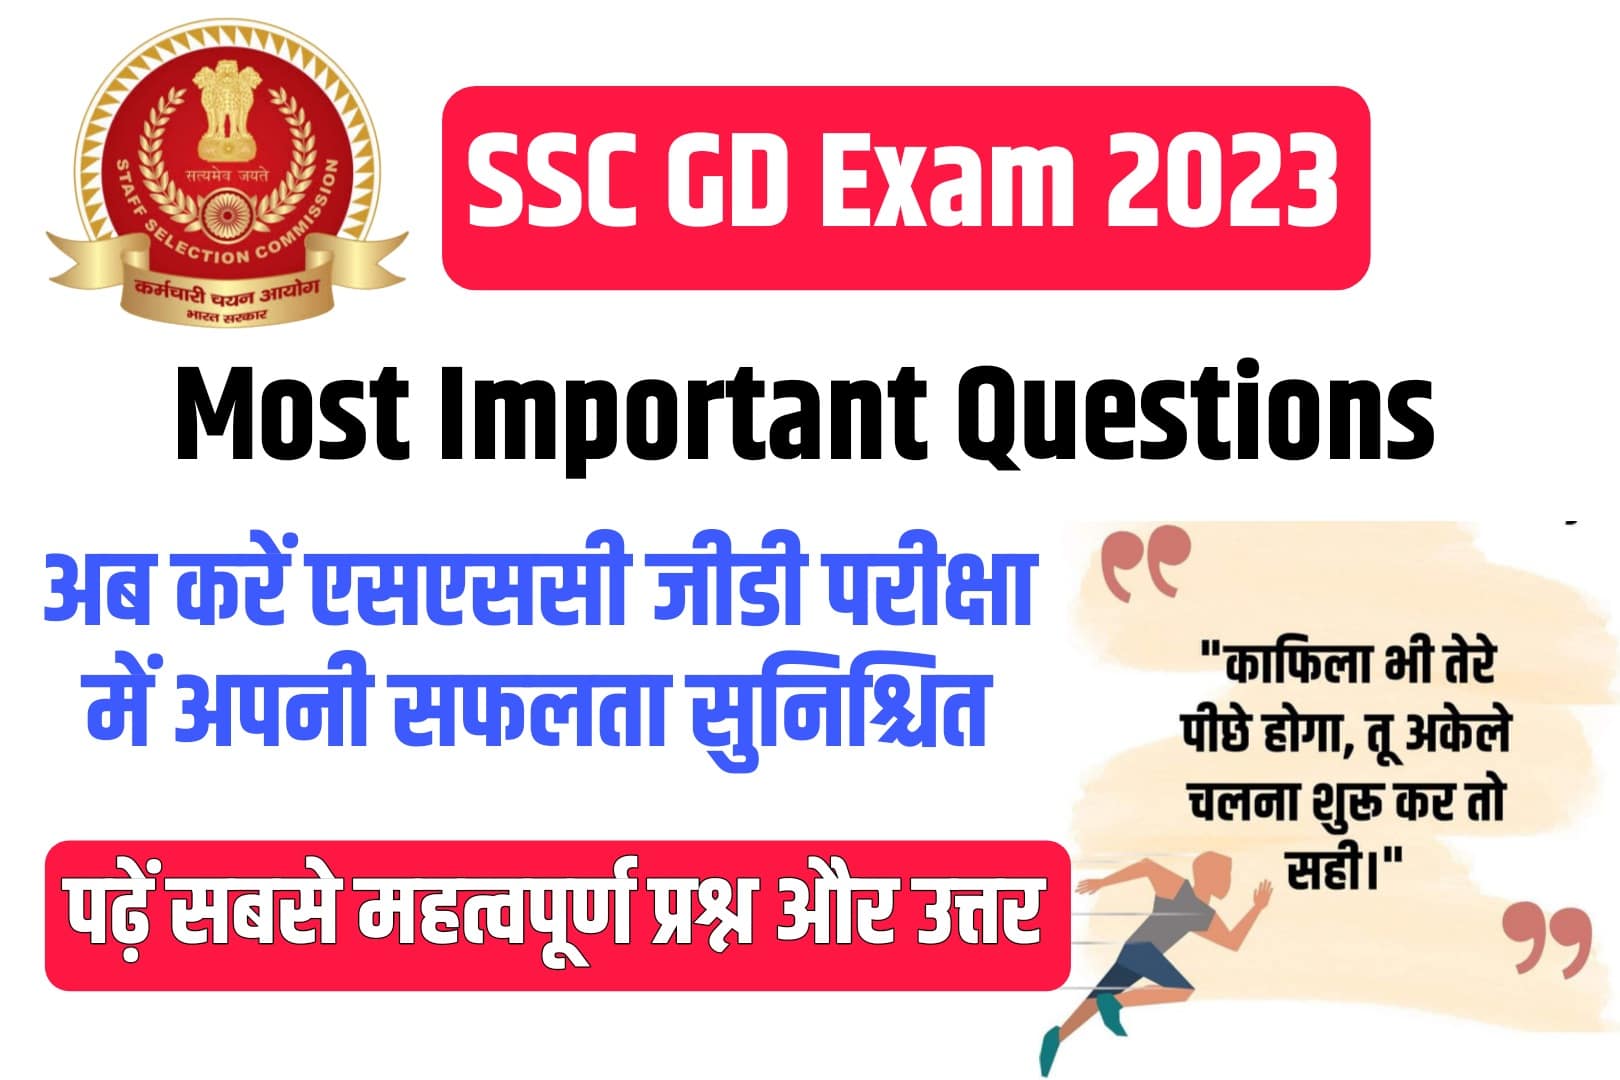 SSC GD Exam 2023 Most Important Questions : एसएससी जीडी की परीक्षा में सफलता पाने हेतु सबसे महत्वपूर्ण प्रश्न और उत्तर